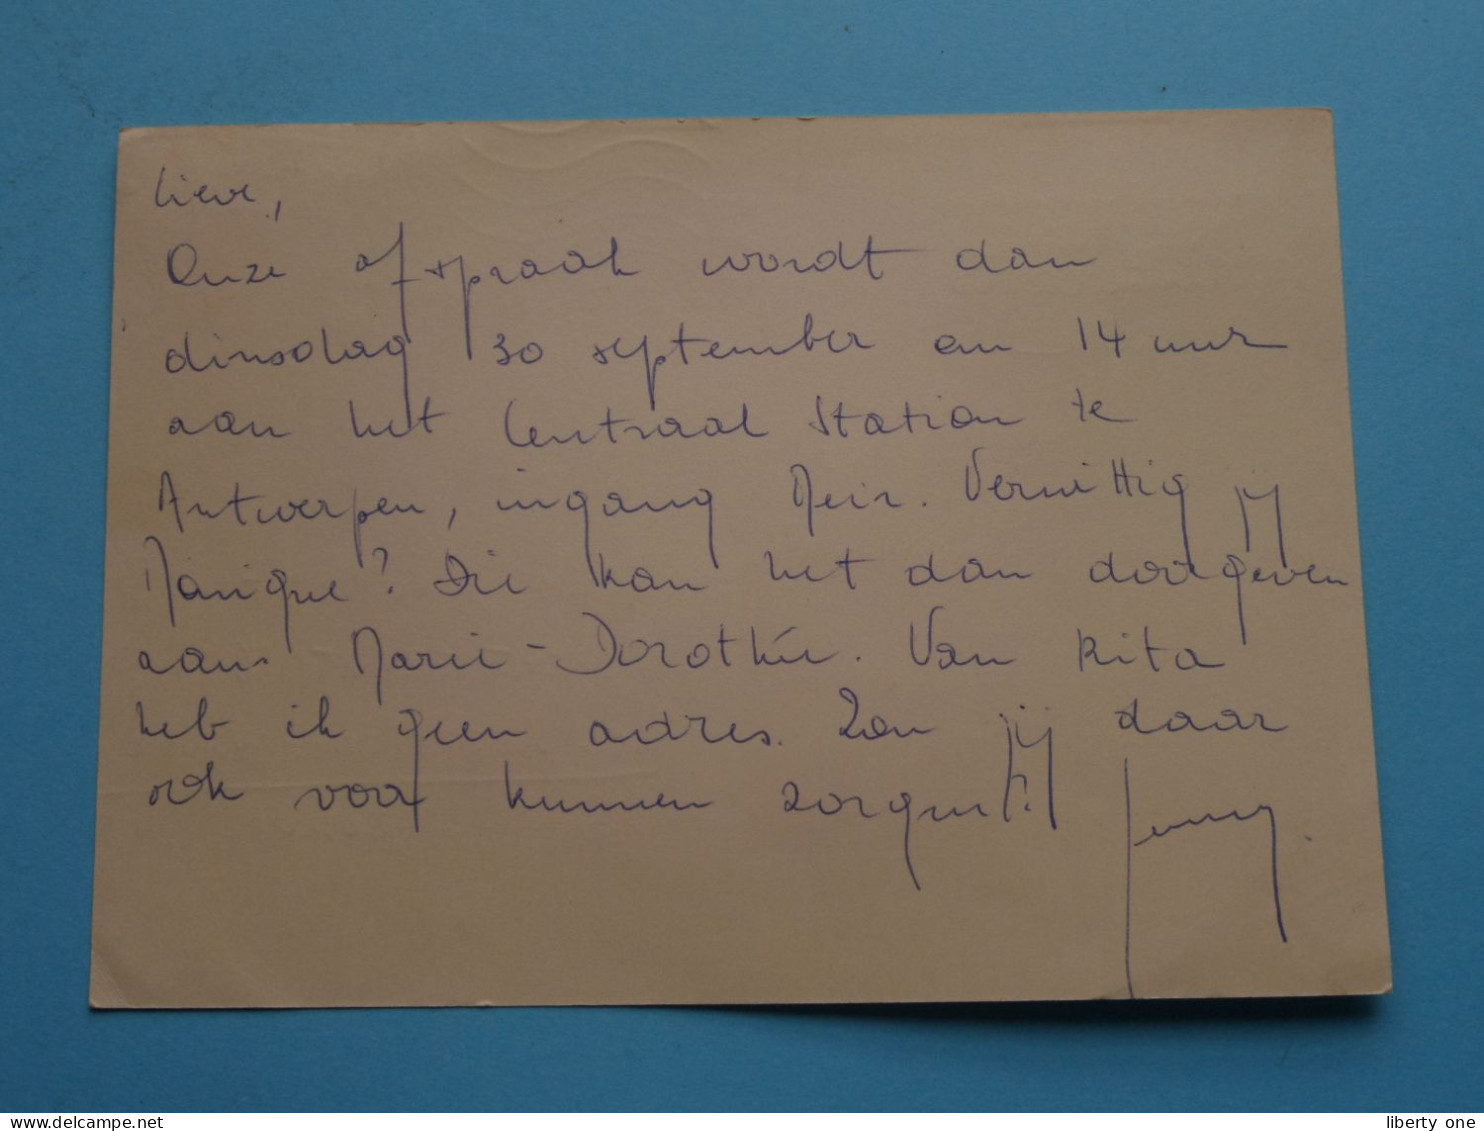 Publi " LEVIS Jeans > Importextila Brussel " ( Zie Scan ) Gele Briefkaart 1969 ( Publibel 2368 N ) ! - Lettres & Documents